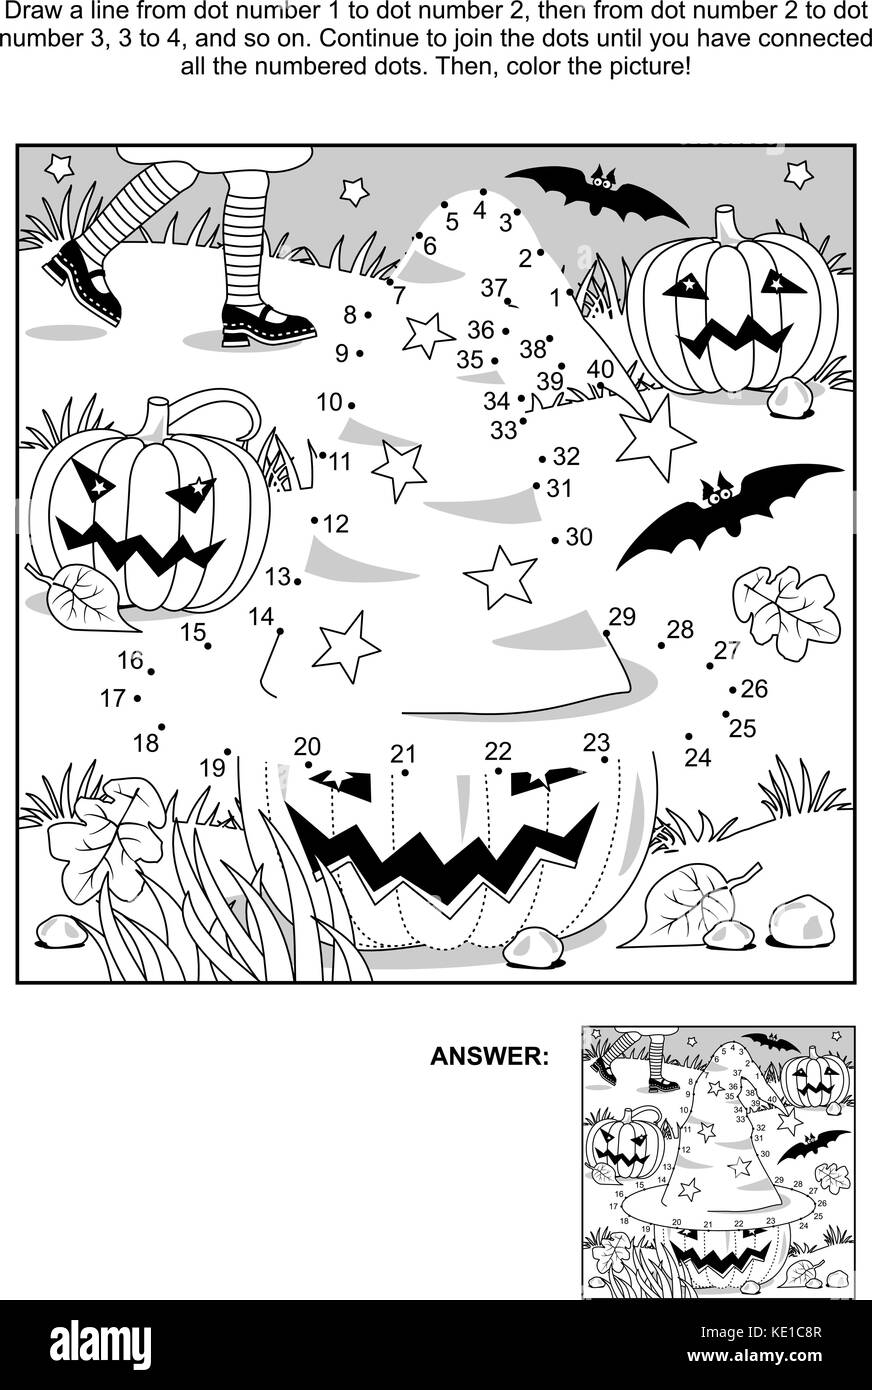 Die punkte Bild Puzzle anschließen und Färbung Seite - halloween Szene mit Hexenhut, Kürbisse, Fledermäuse, und die junge Hexe Beine. Antwort enthalten. Stock Vektor